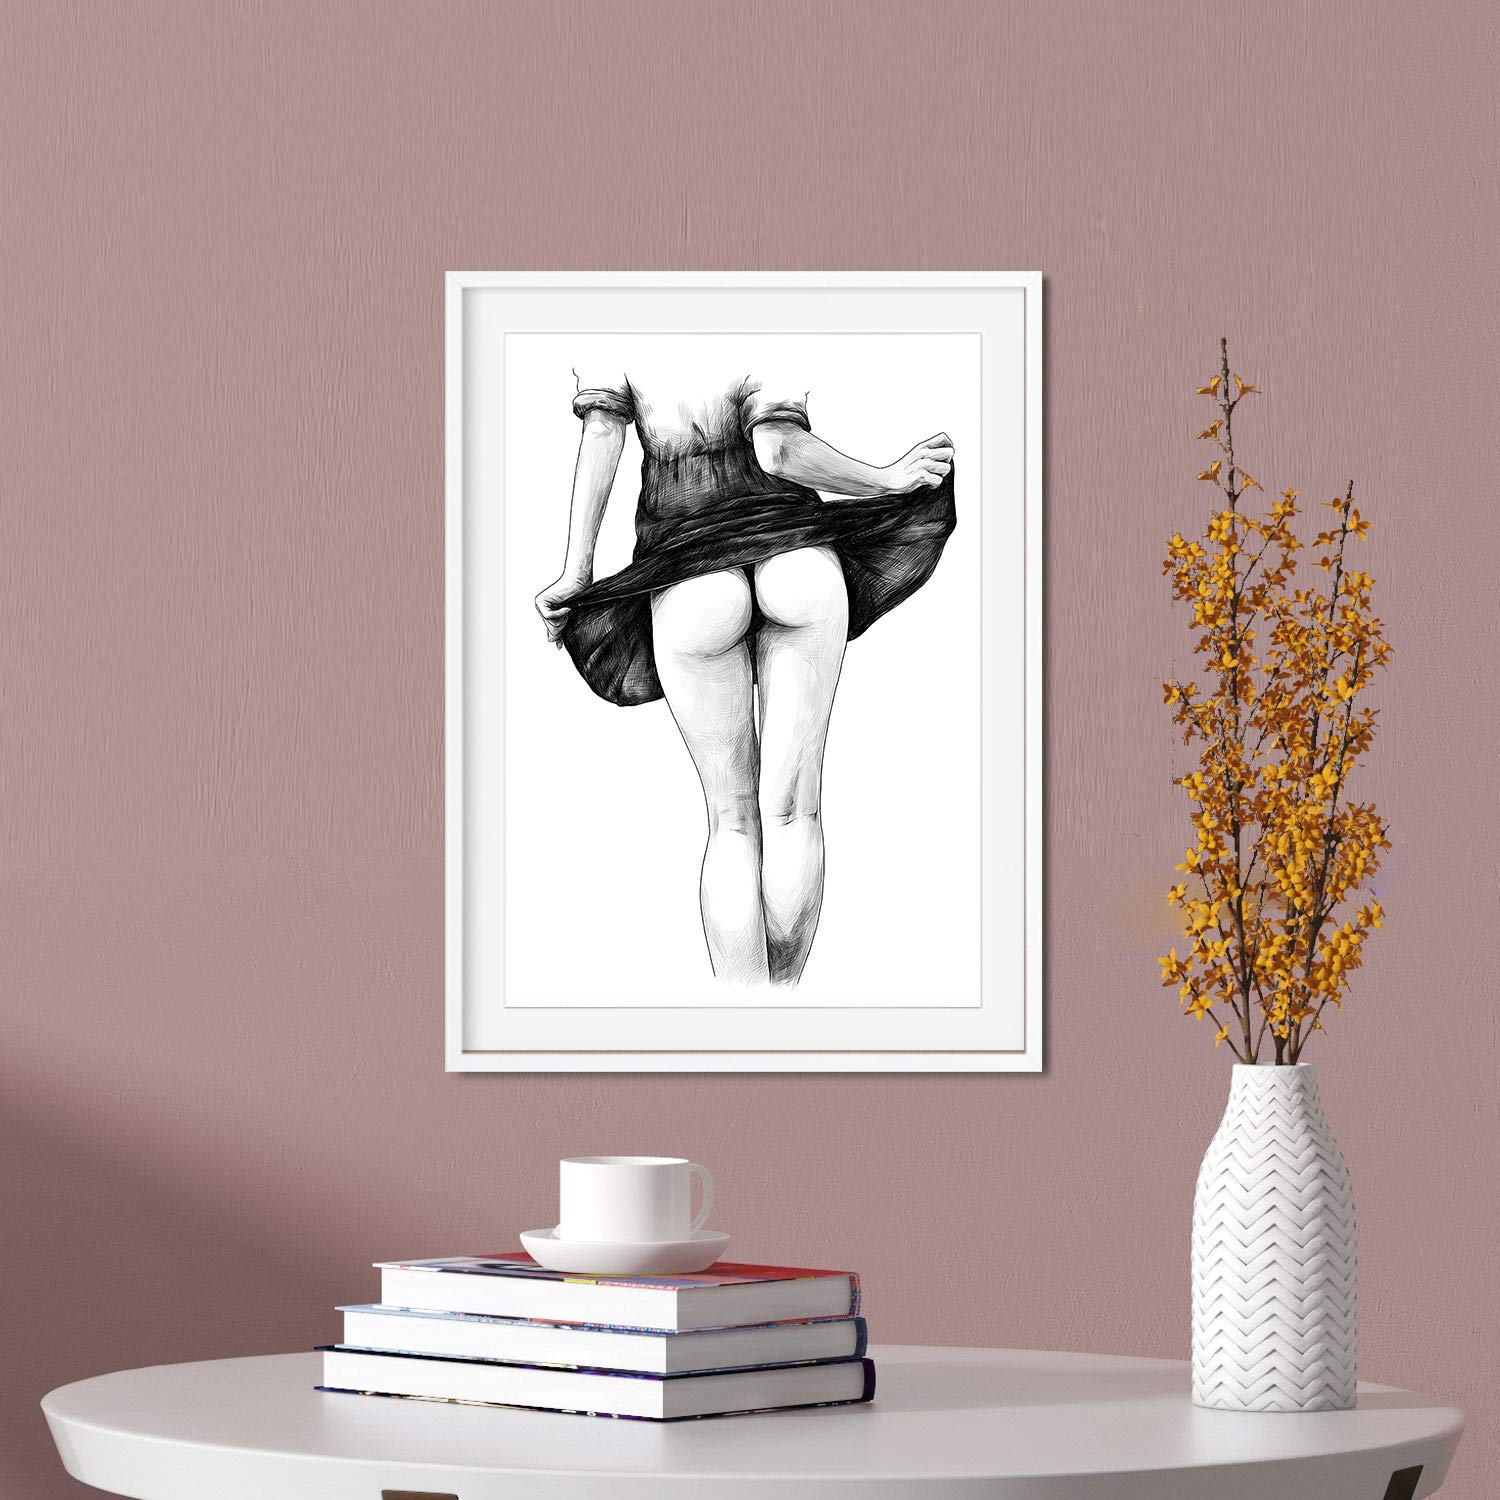 Set de posters eróticos. Láminas Espalda Culo dibujadas con imágenes sensuales del cuerpo femenino.-Artwork-Nacnic-Nacnic Estudio SL